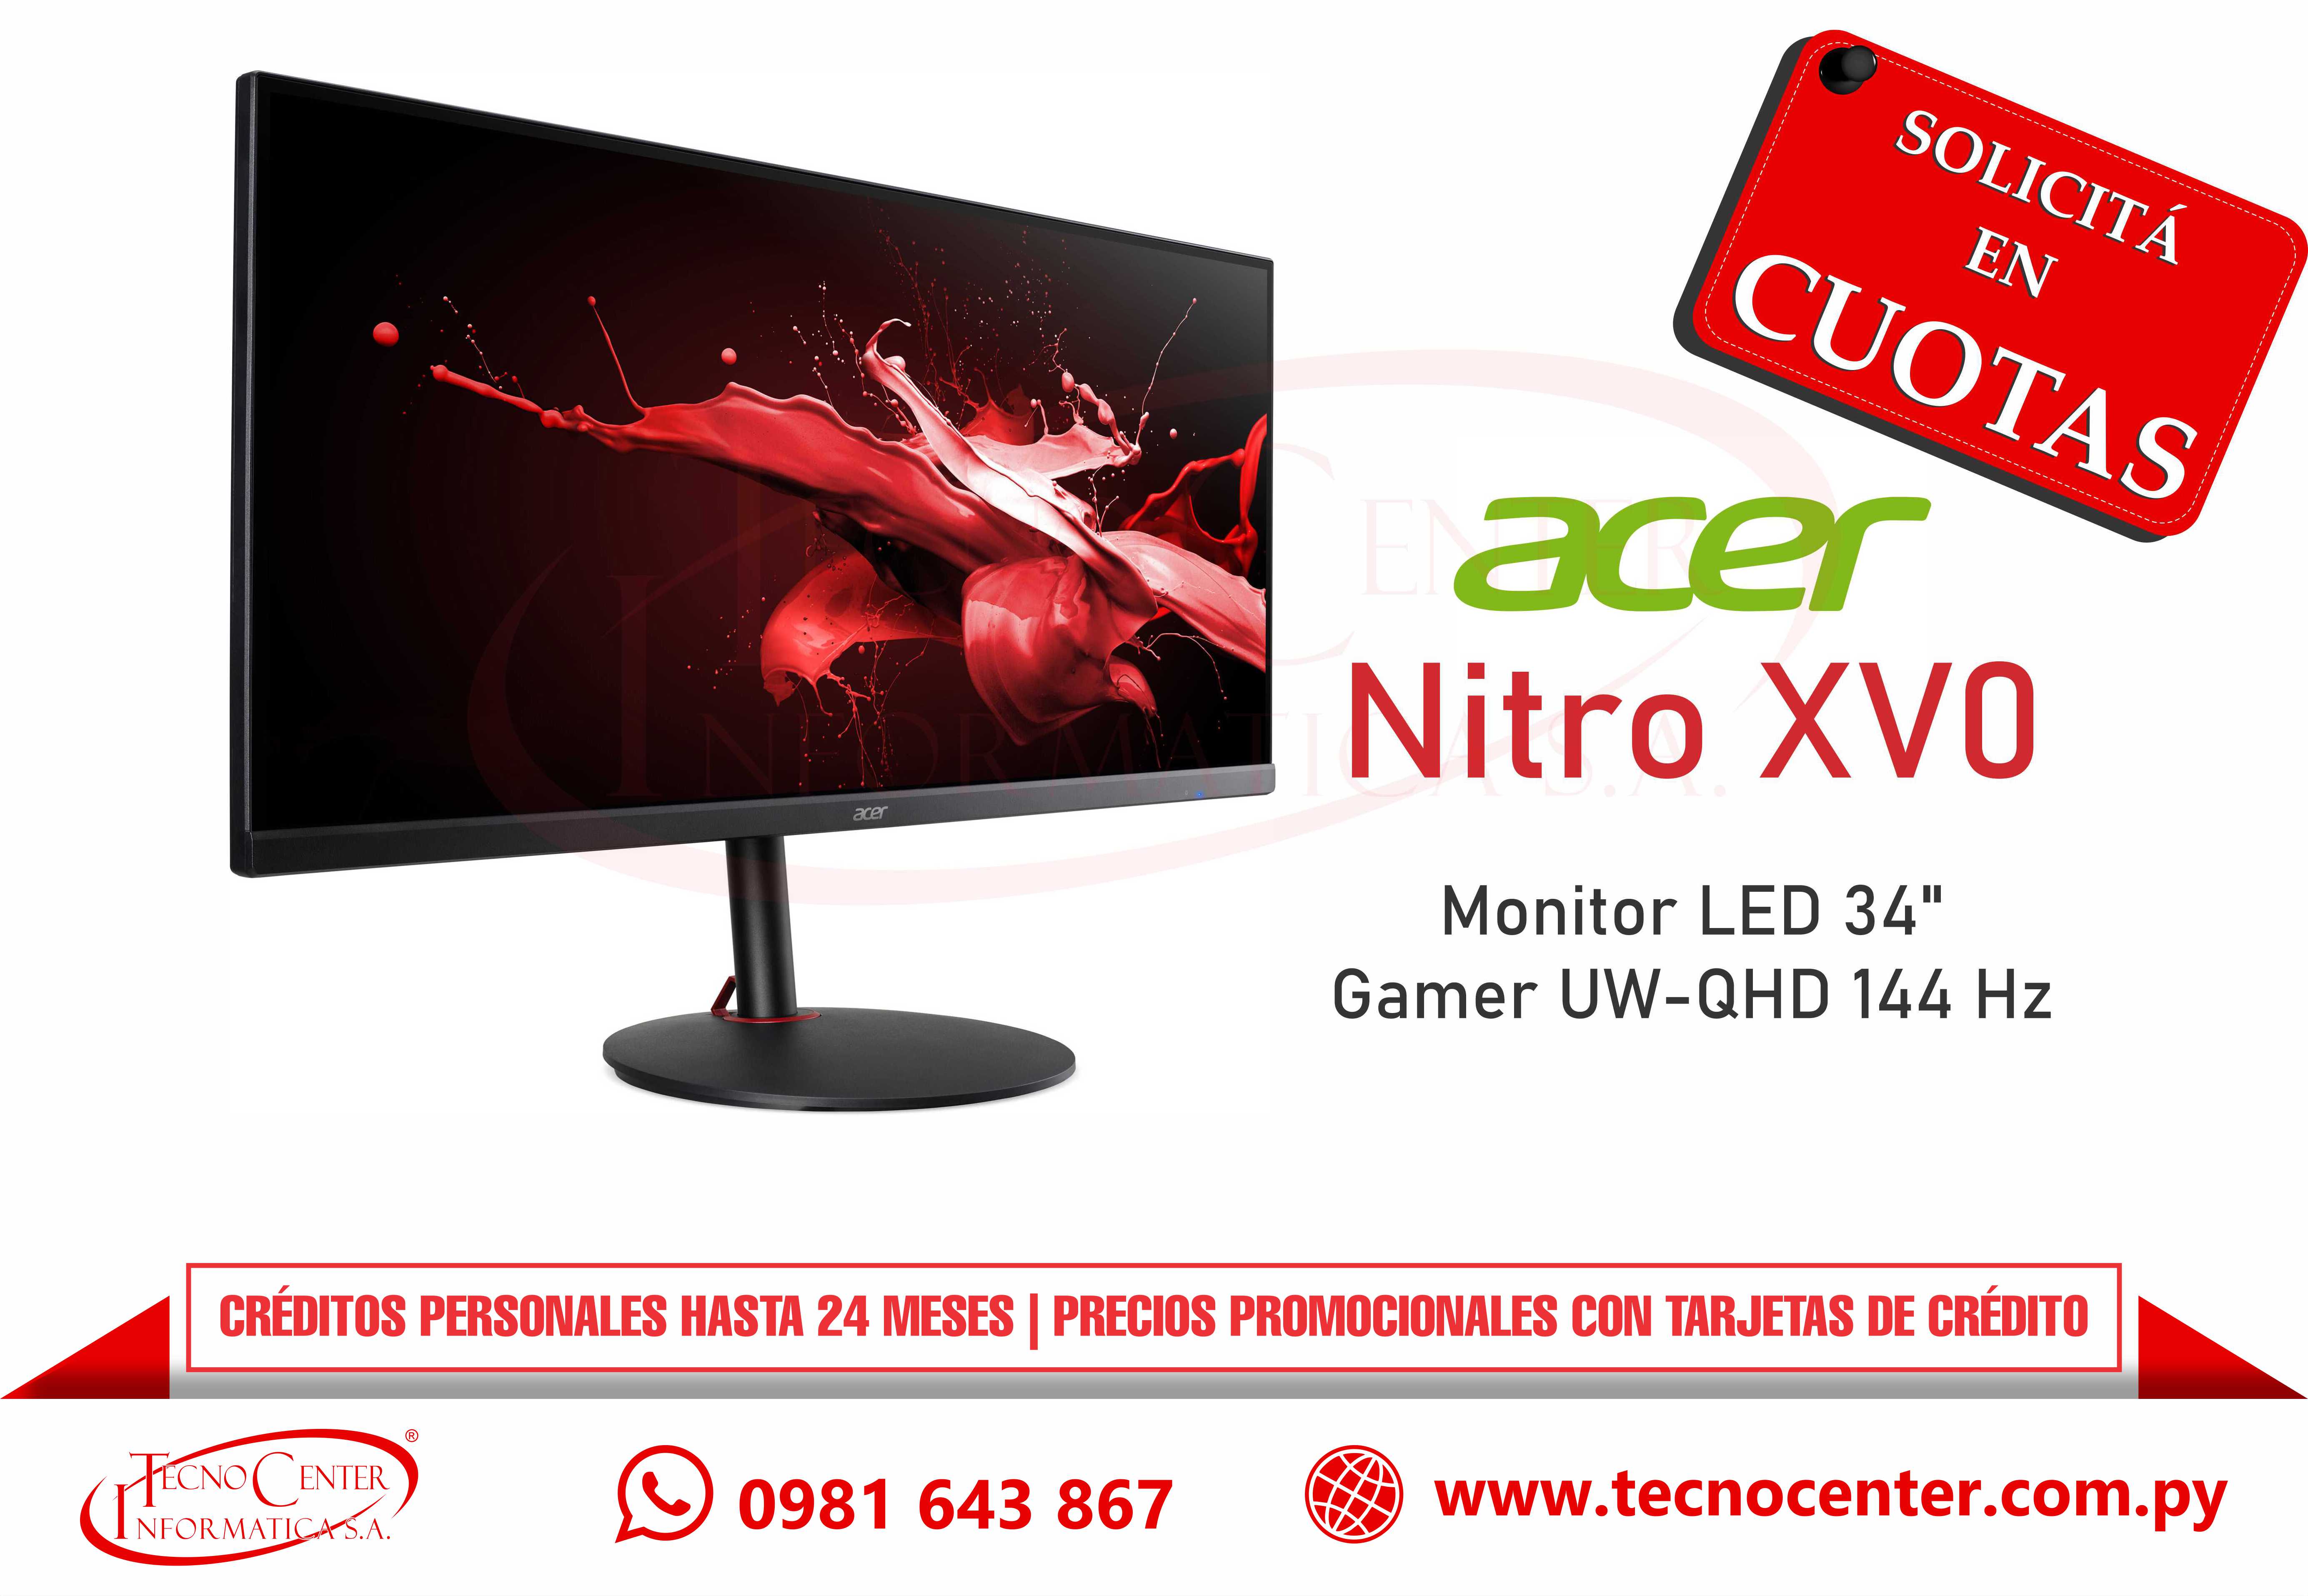 Monitor LED Gamer 34” Acer Nitro XV0 144 Hz